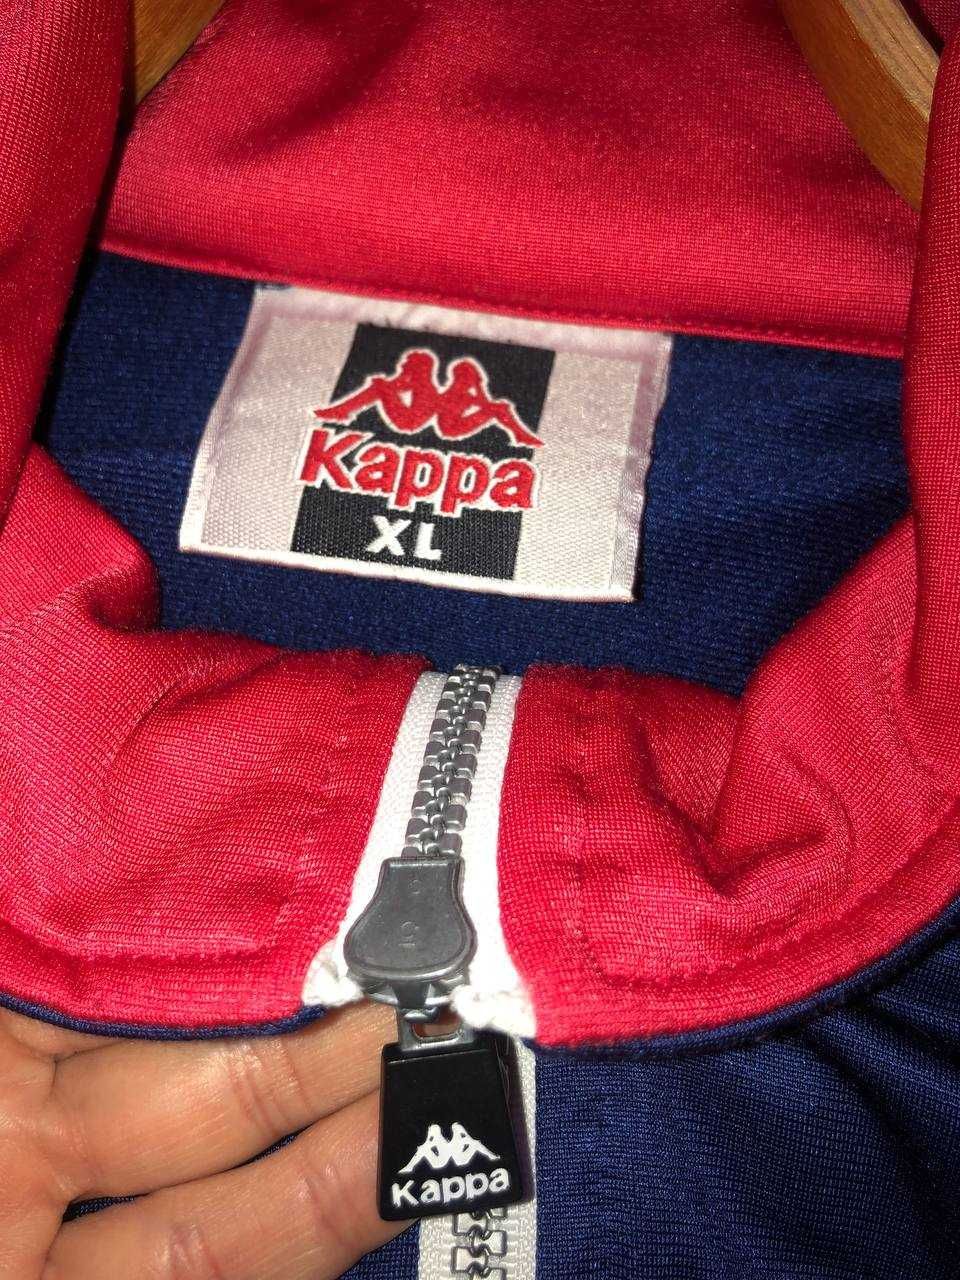 спортивный костюм Kappa на лампасах